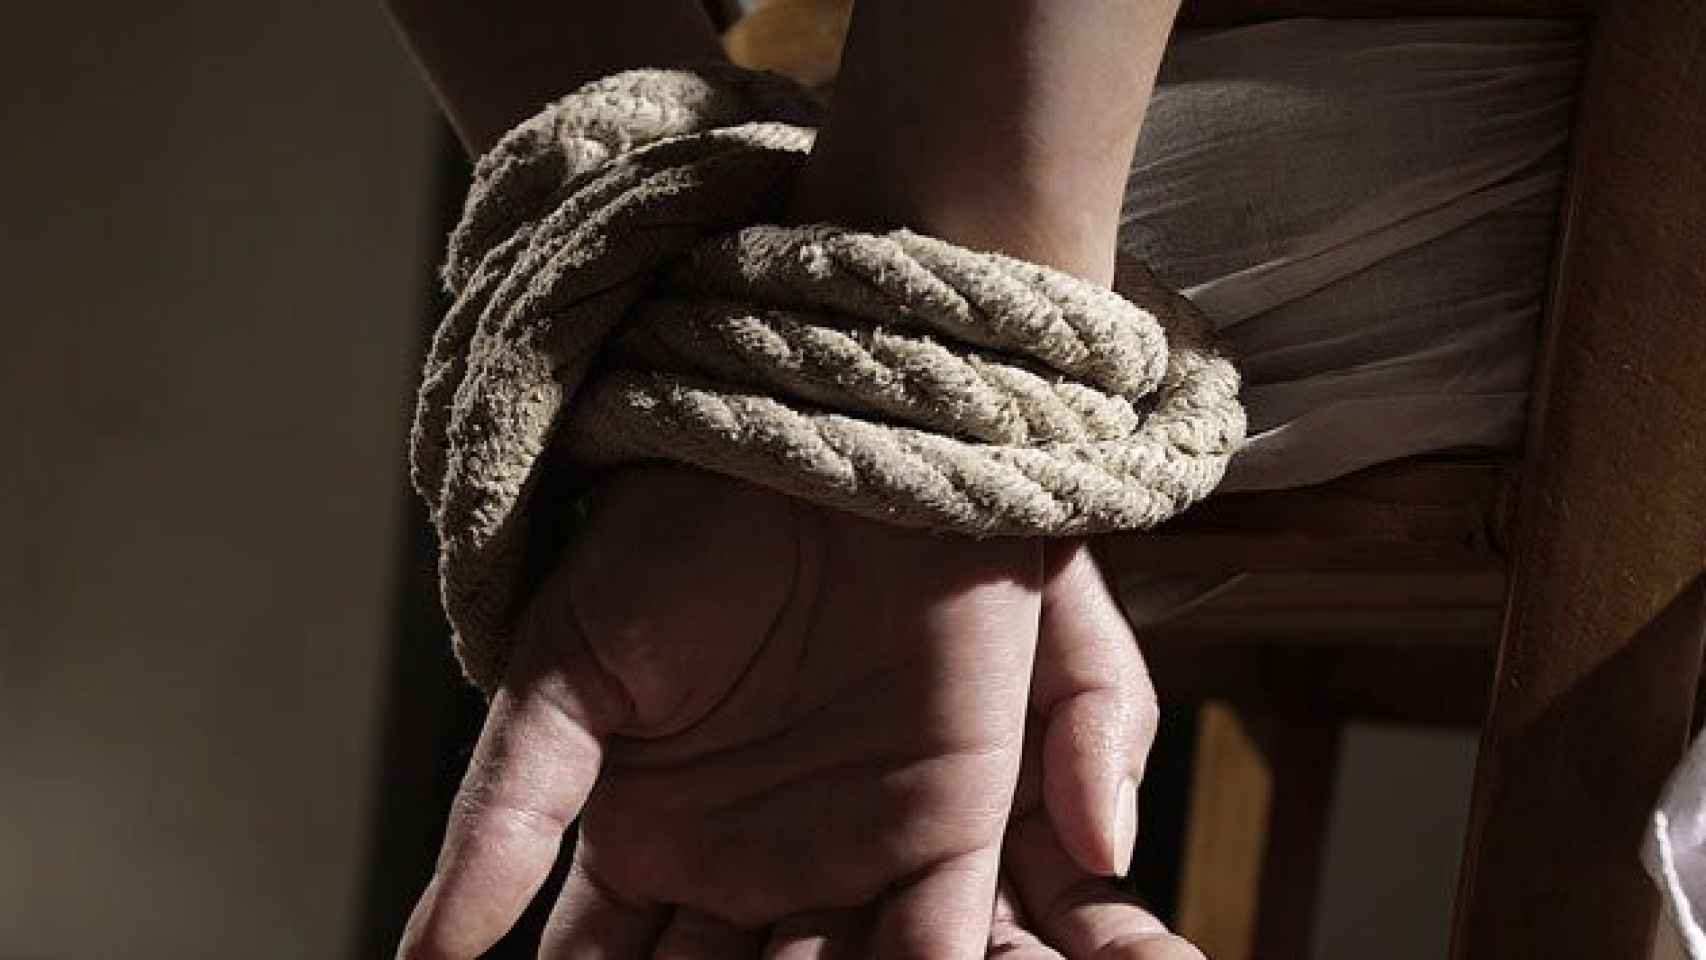 Imagen de las manos atadas de un supuesto secuestrado.